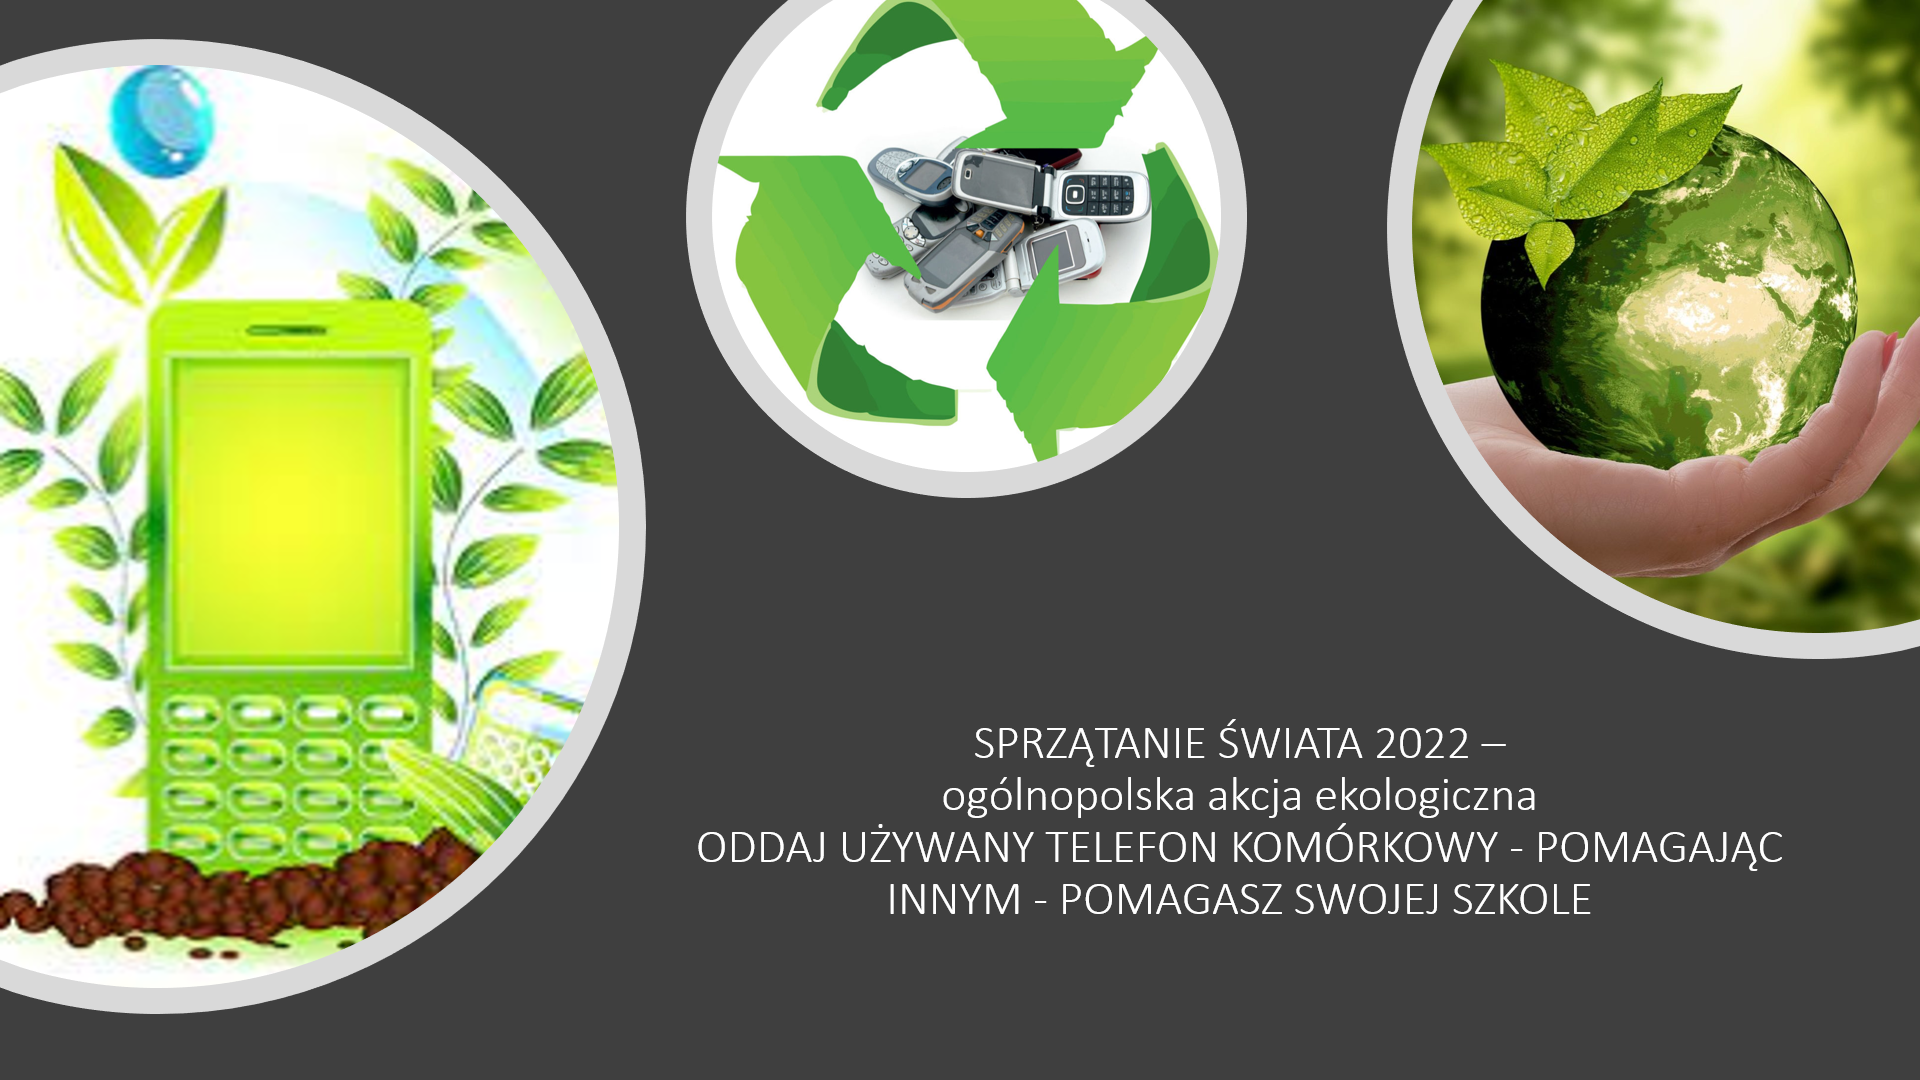 Akcja "Sprzątanie Świata 2022"- zbiorka używanych telefonów.